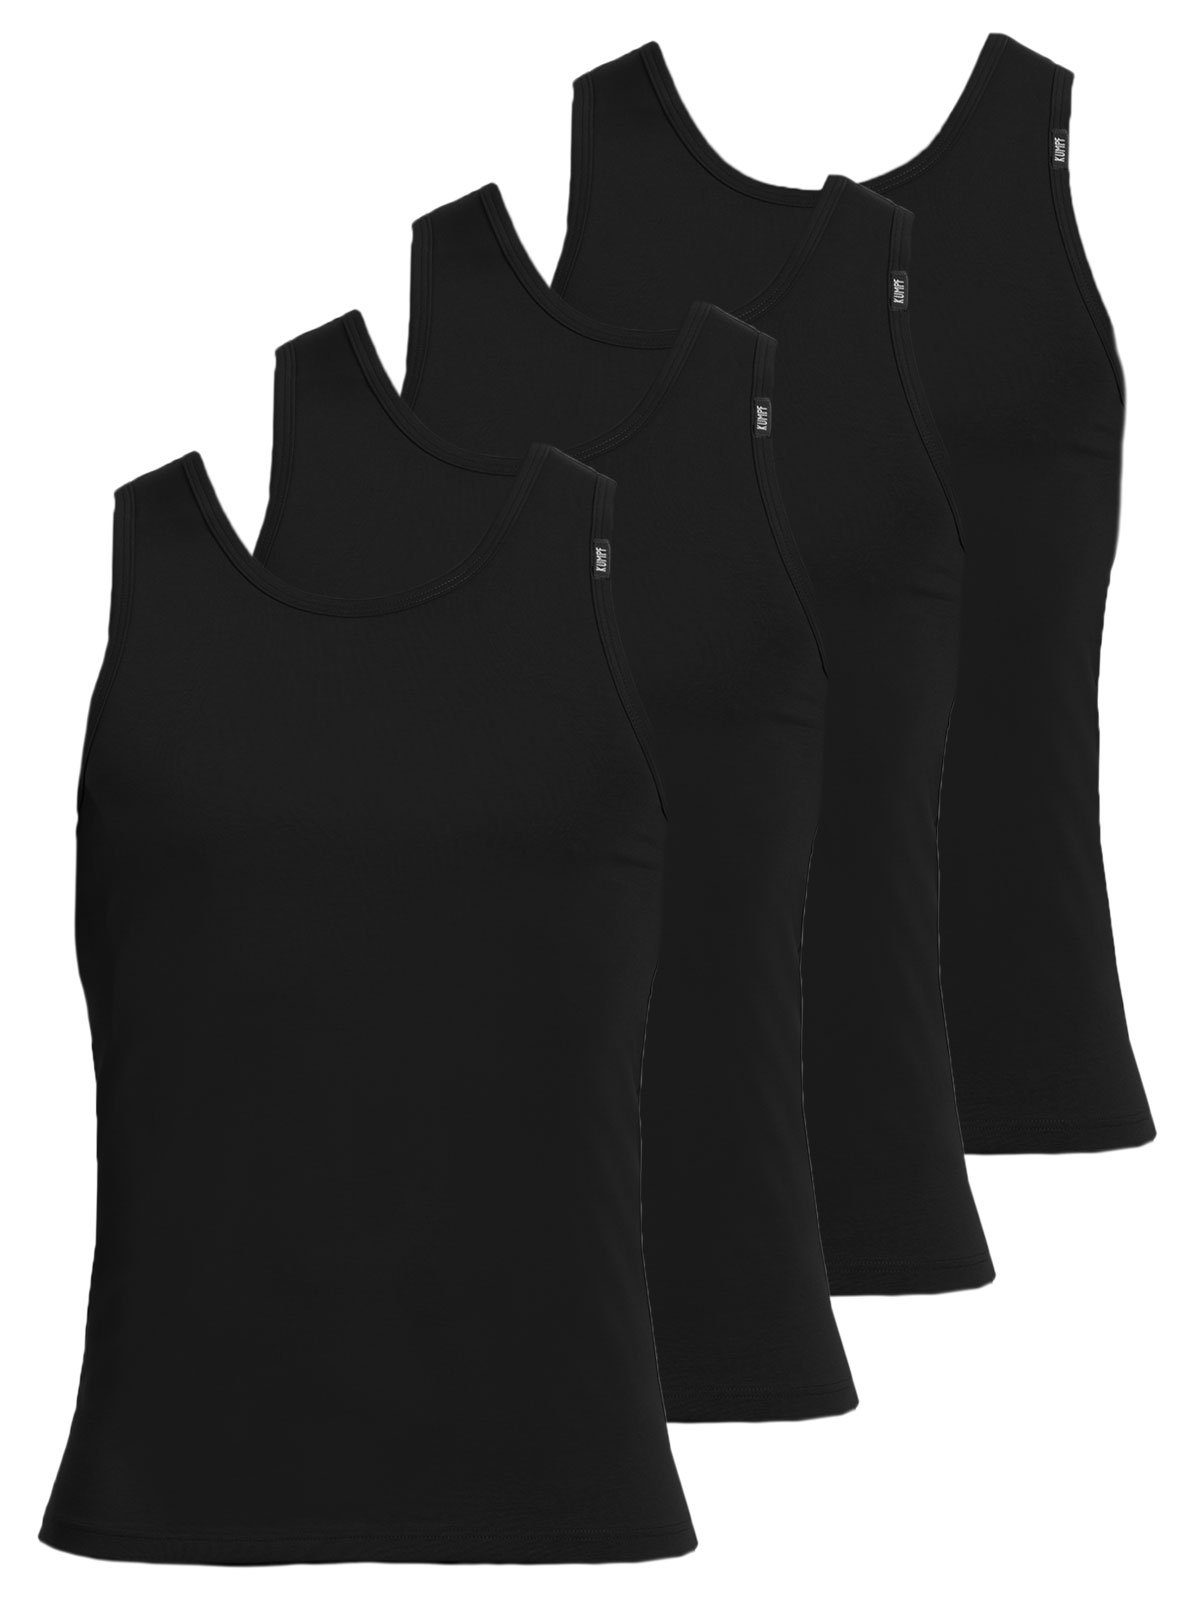 KUMPF Achselhemd 4er Sparpack Bio Herren 4-St) hohe Markenqualität schwarz Cotton Unterhemd (Spar-Set